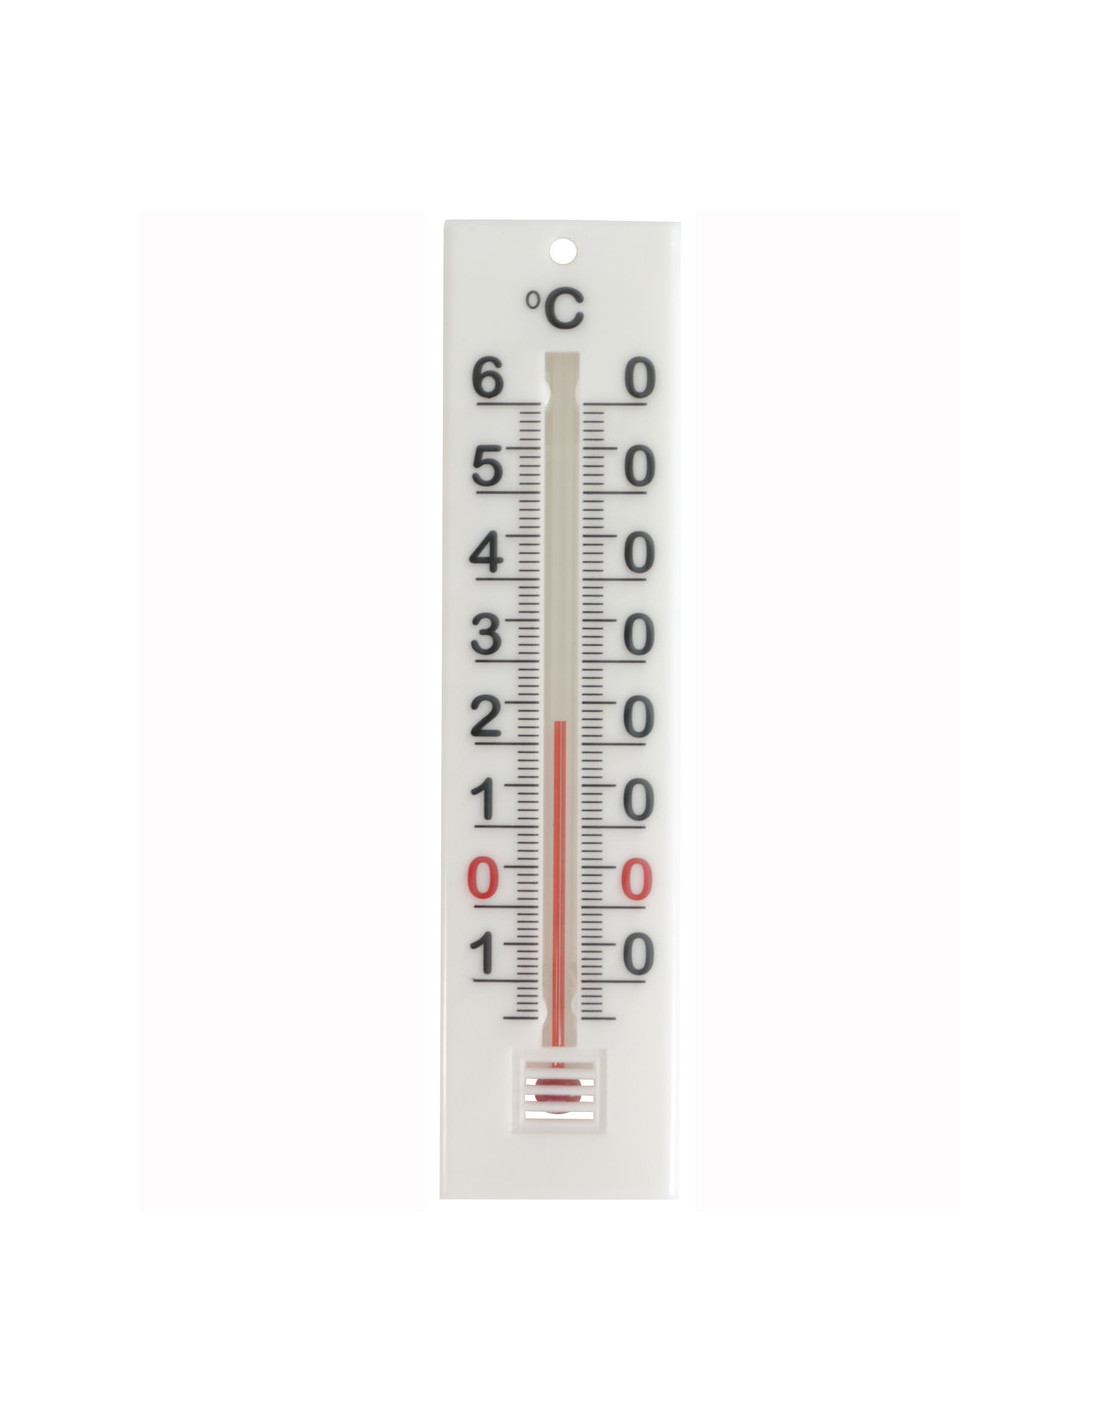 Thermometre extérieur pm blanc 1435.5-Thermometre extérieur Pm blanc 1435.5